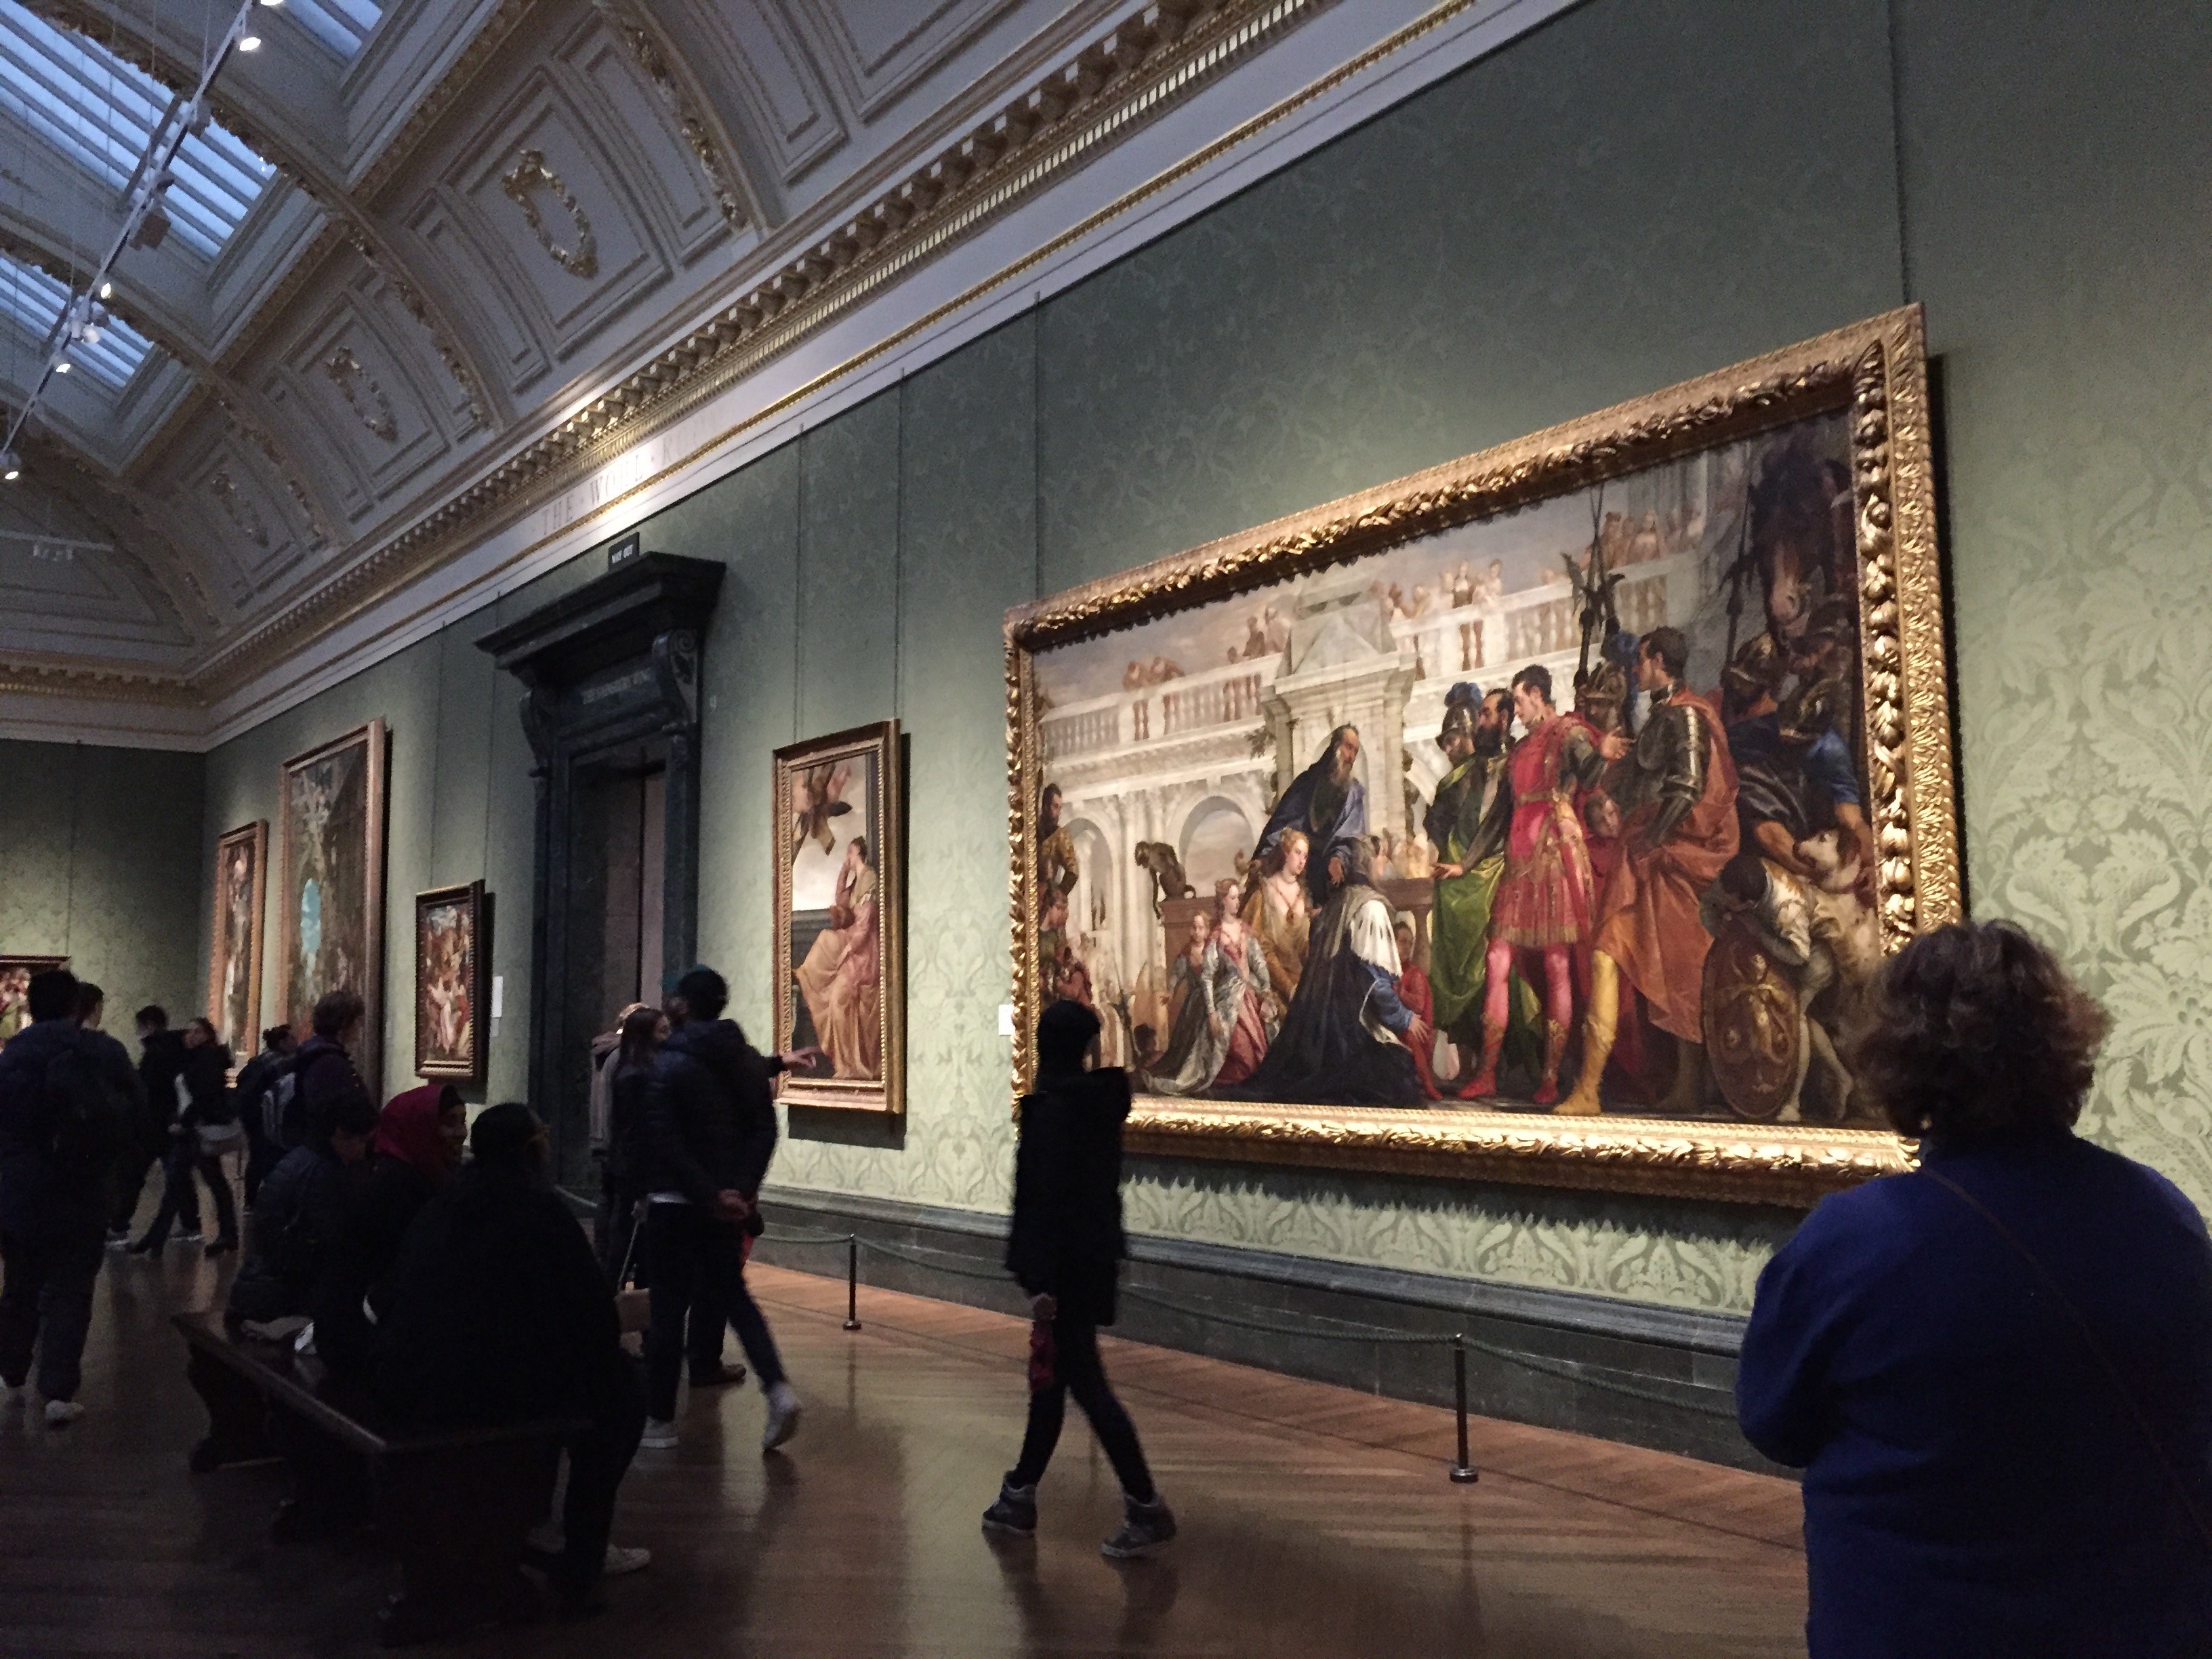 【携程攻略】伦敦国家美术馆景点,走上台阶,宏伟的国家美术馆都是